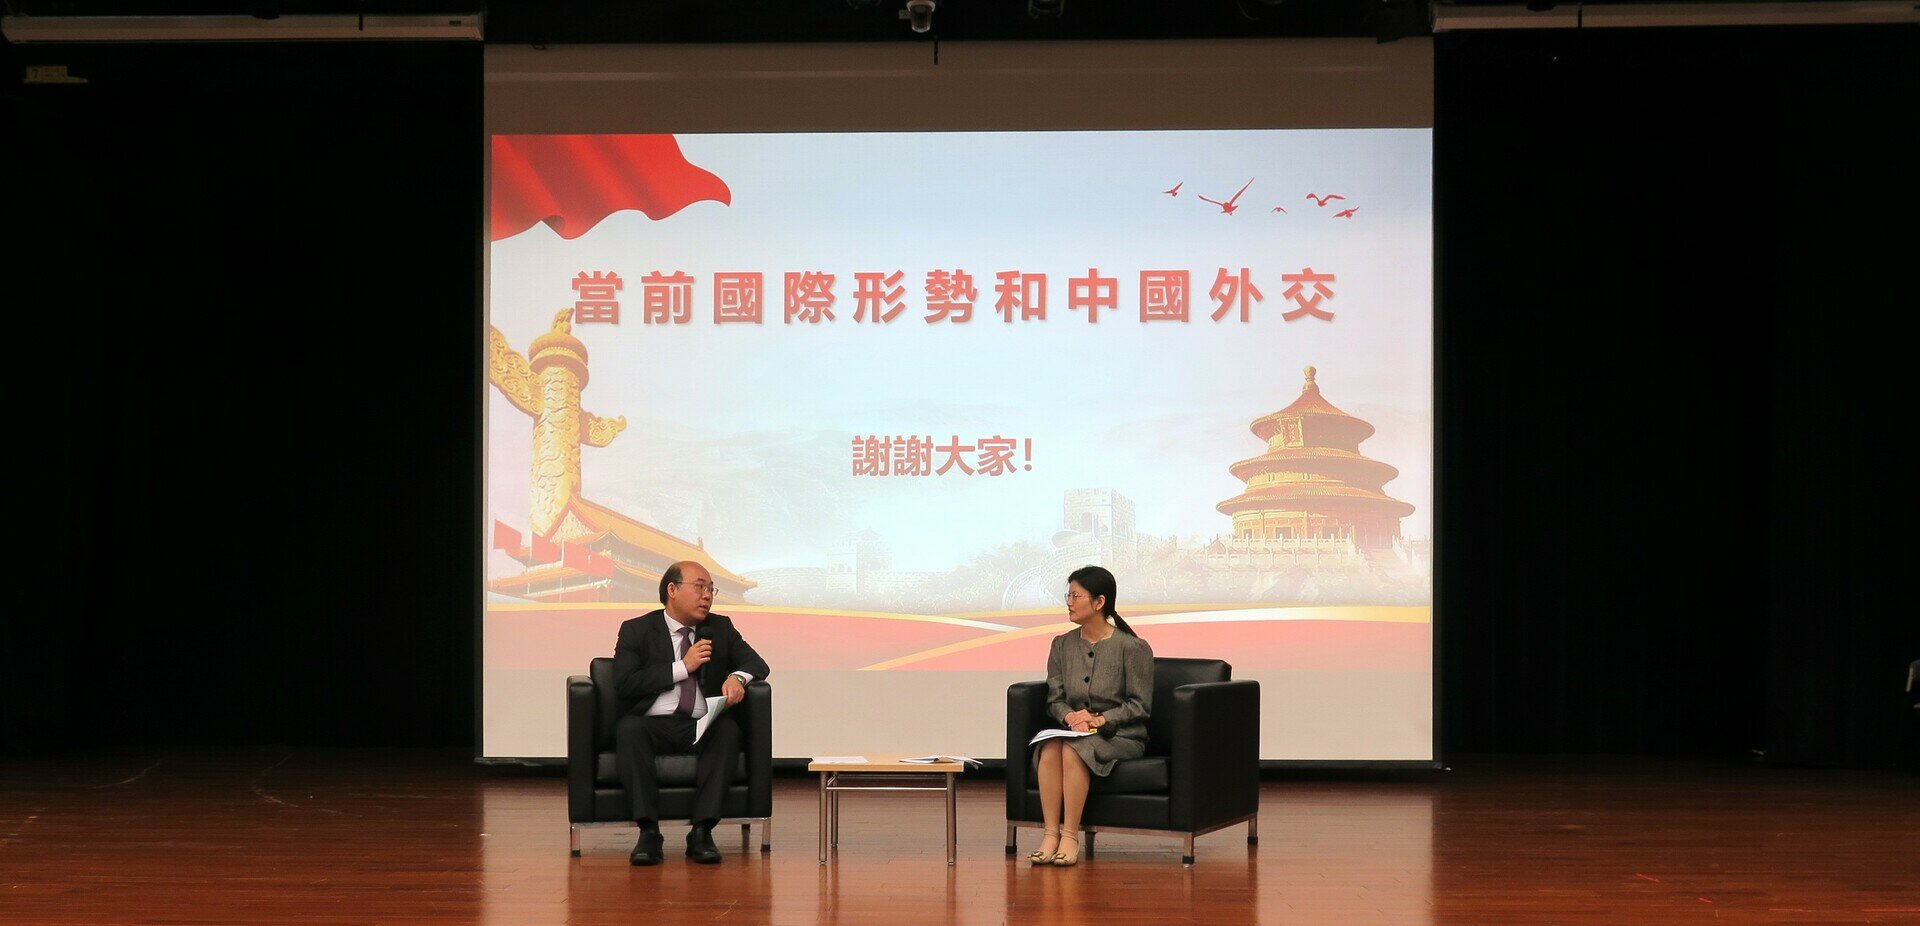 A dialogue between Dr Mark Chow Man-kong, Associate Vice President (Institutional Advancement) (left) and Ms Qian Junjun (right)